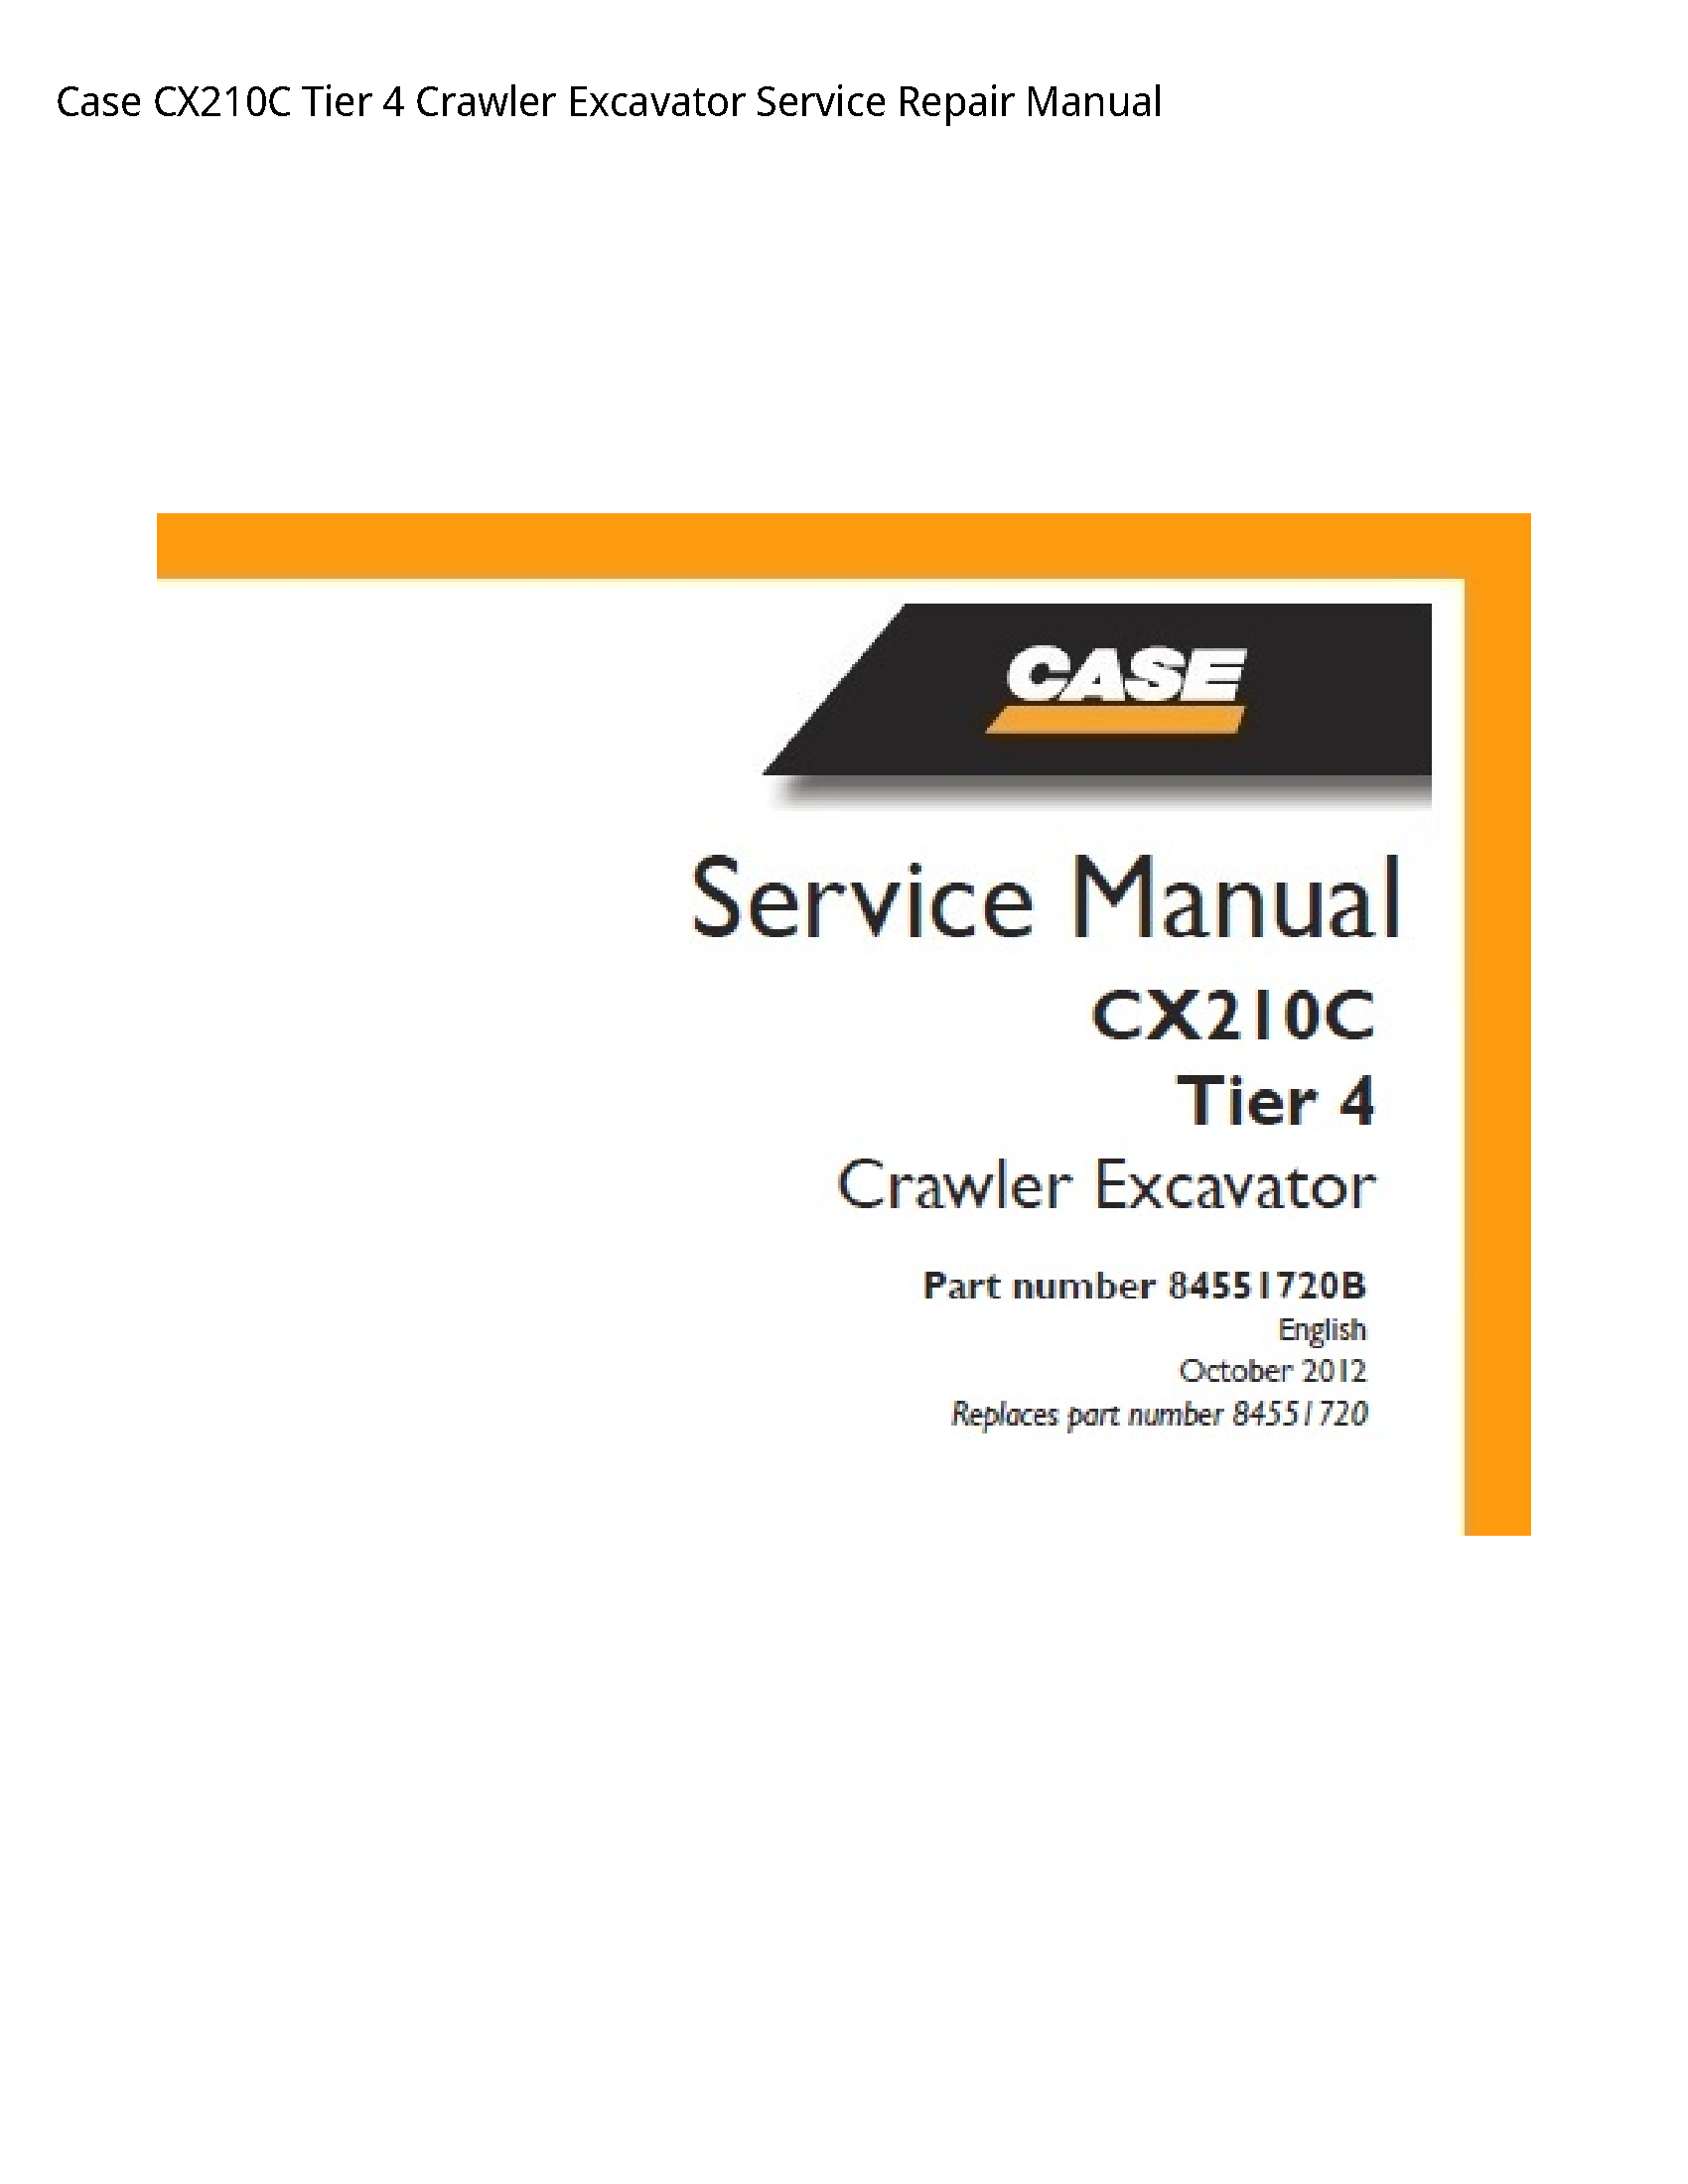 Case/Case IH CX210C Tier Crawler Excavator manual